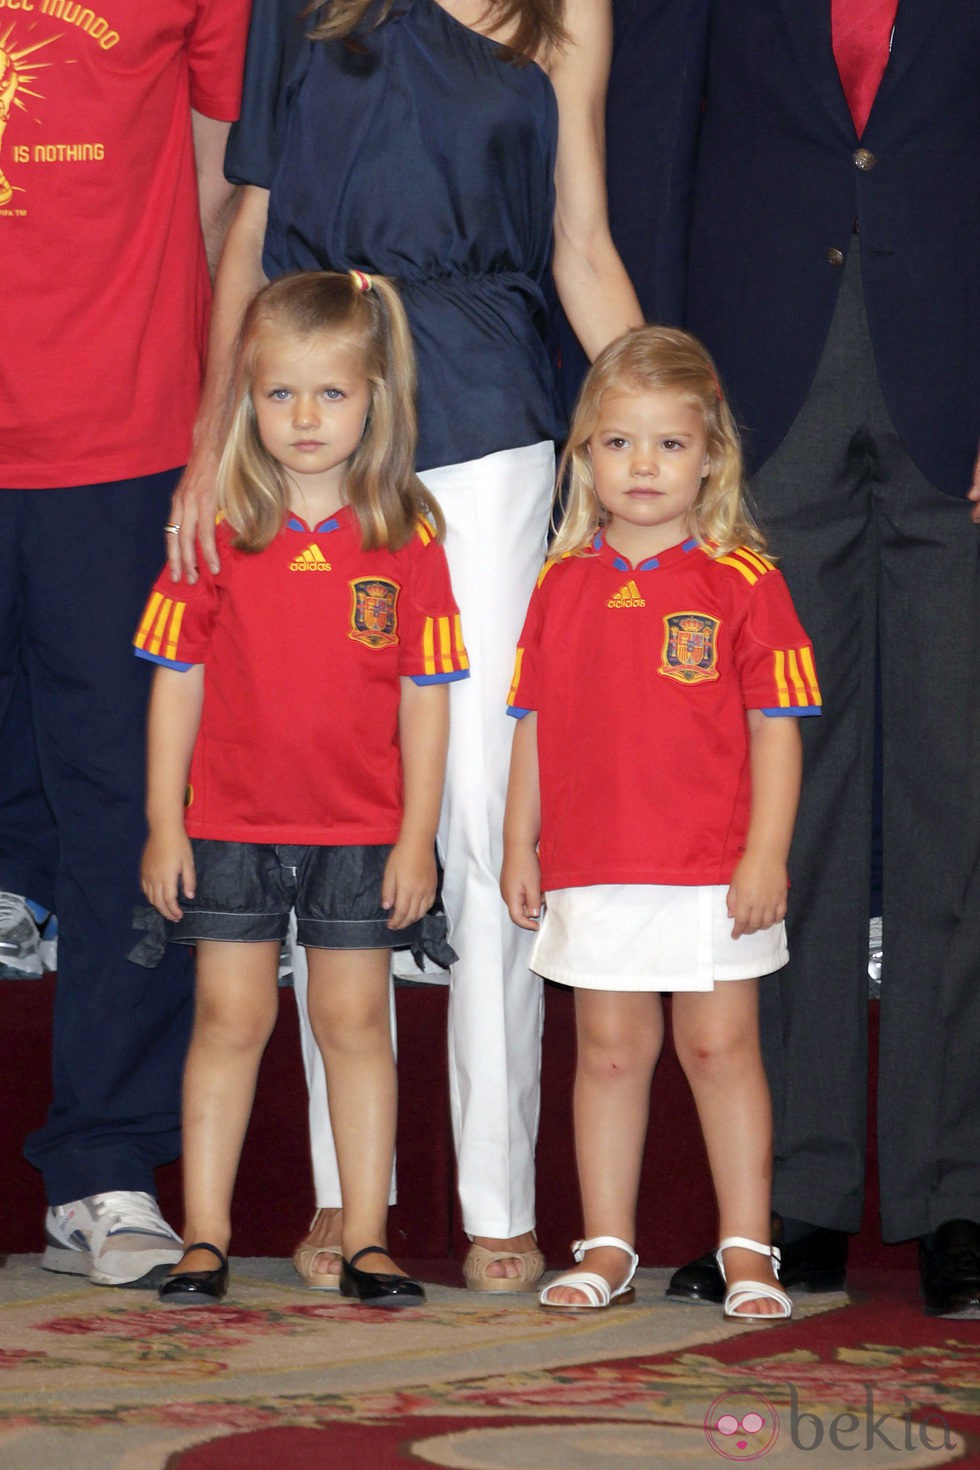 Las Infantas Leonor y Sofía en la recepción a la selección española en 2010